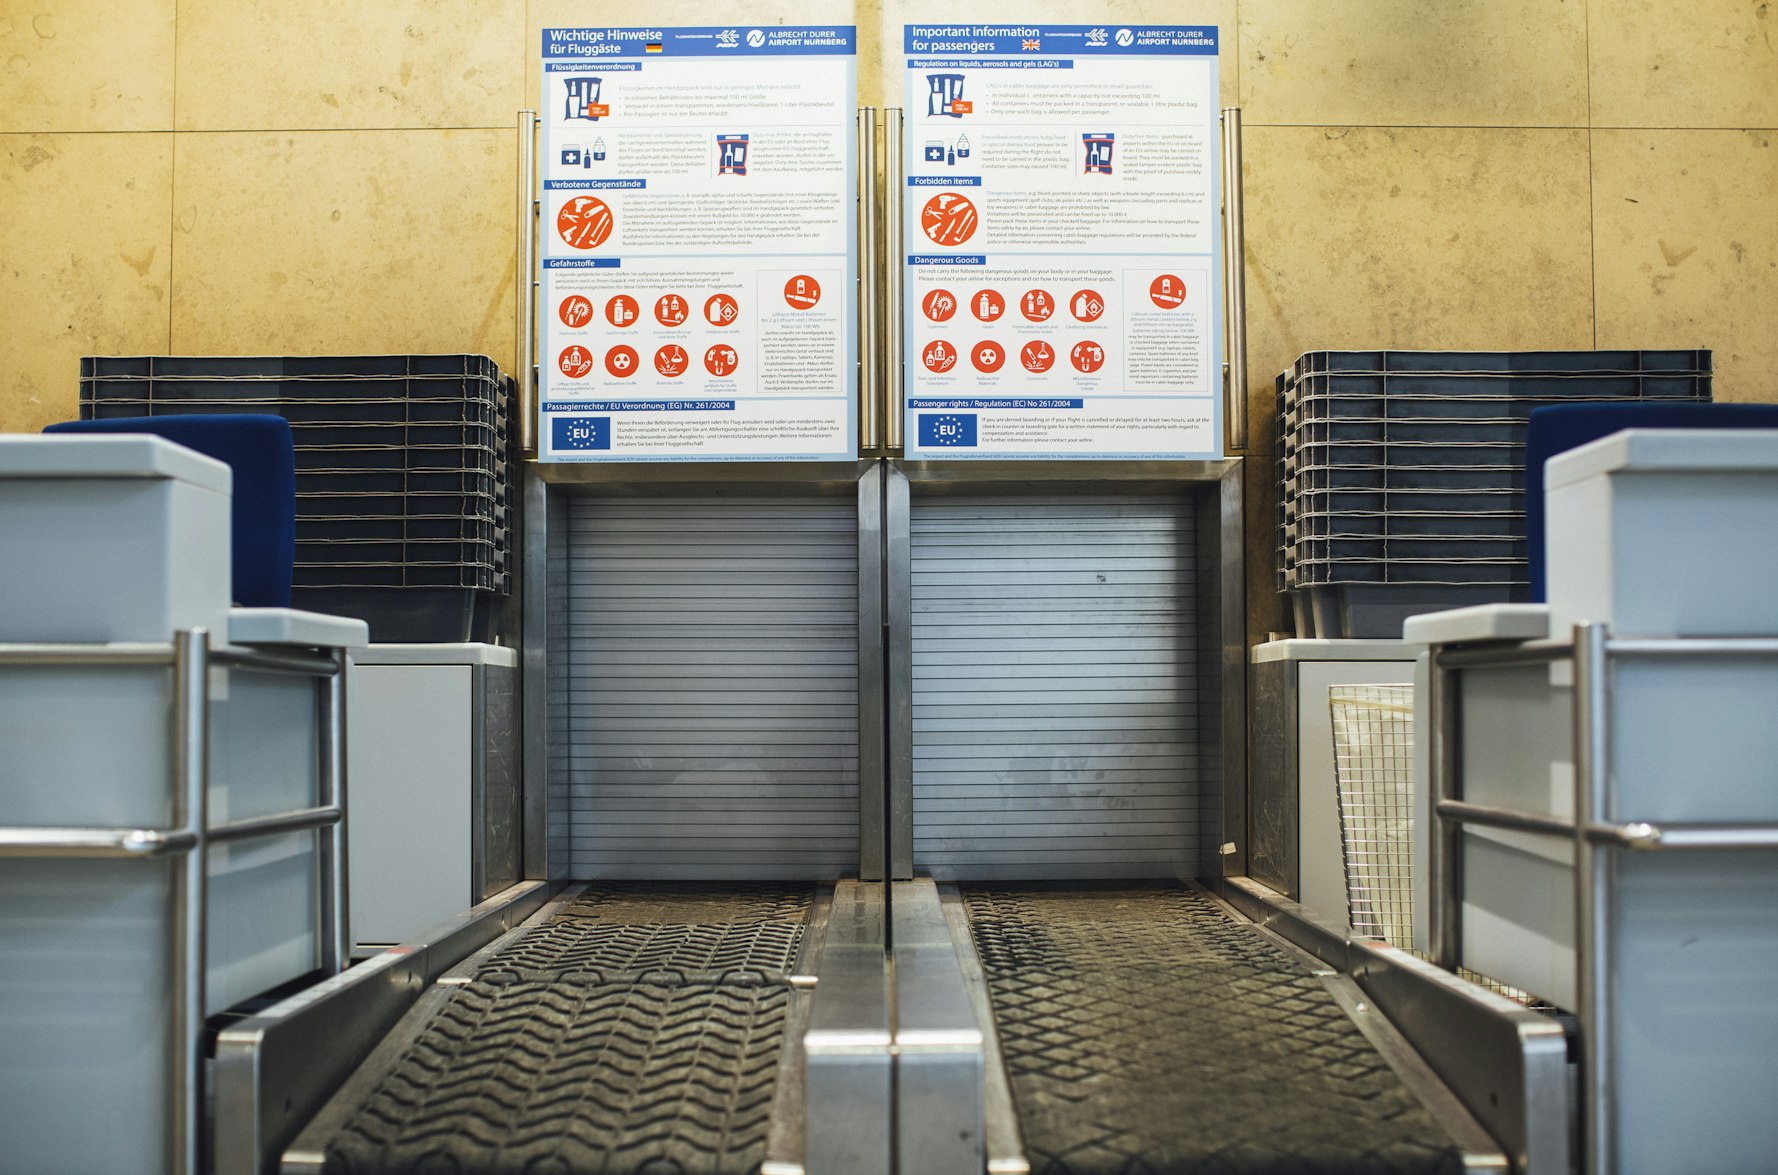 Nastri trasportatori per i bagagli in aeroporto